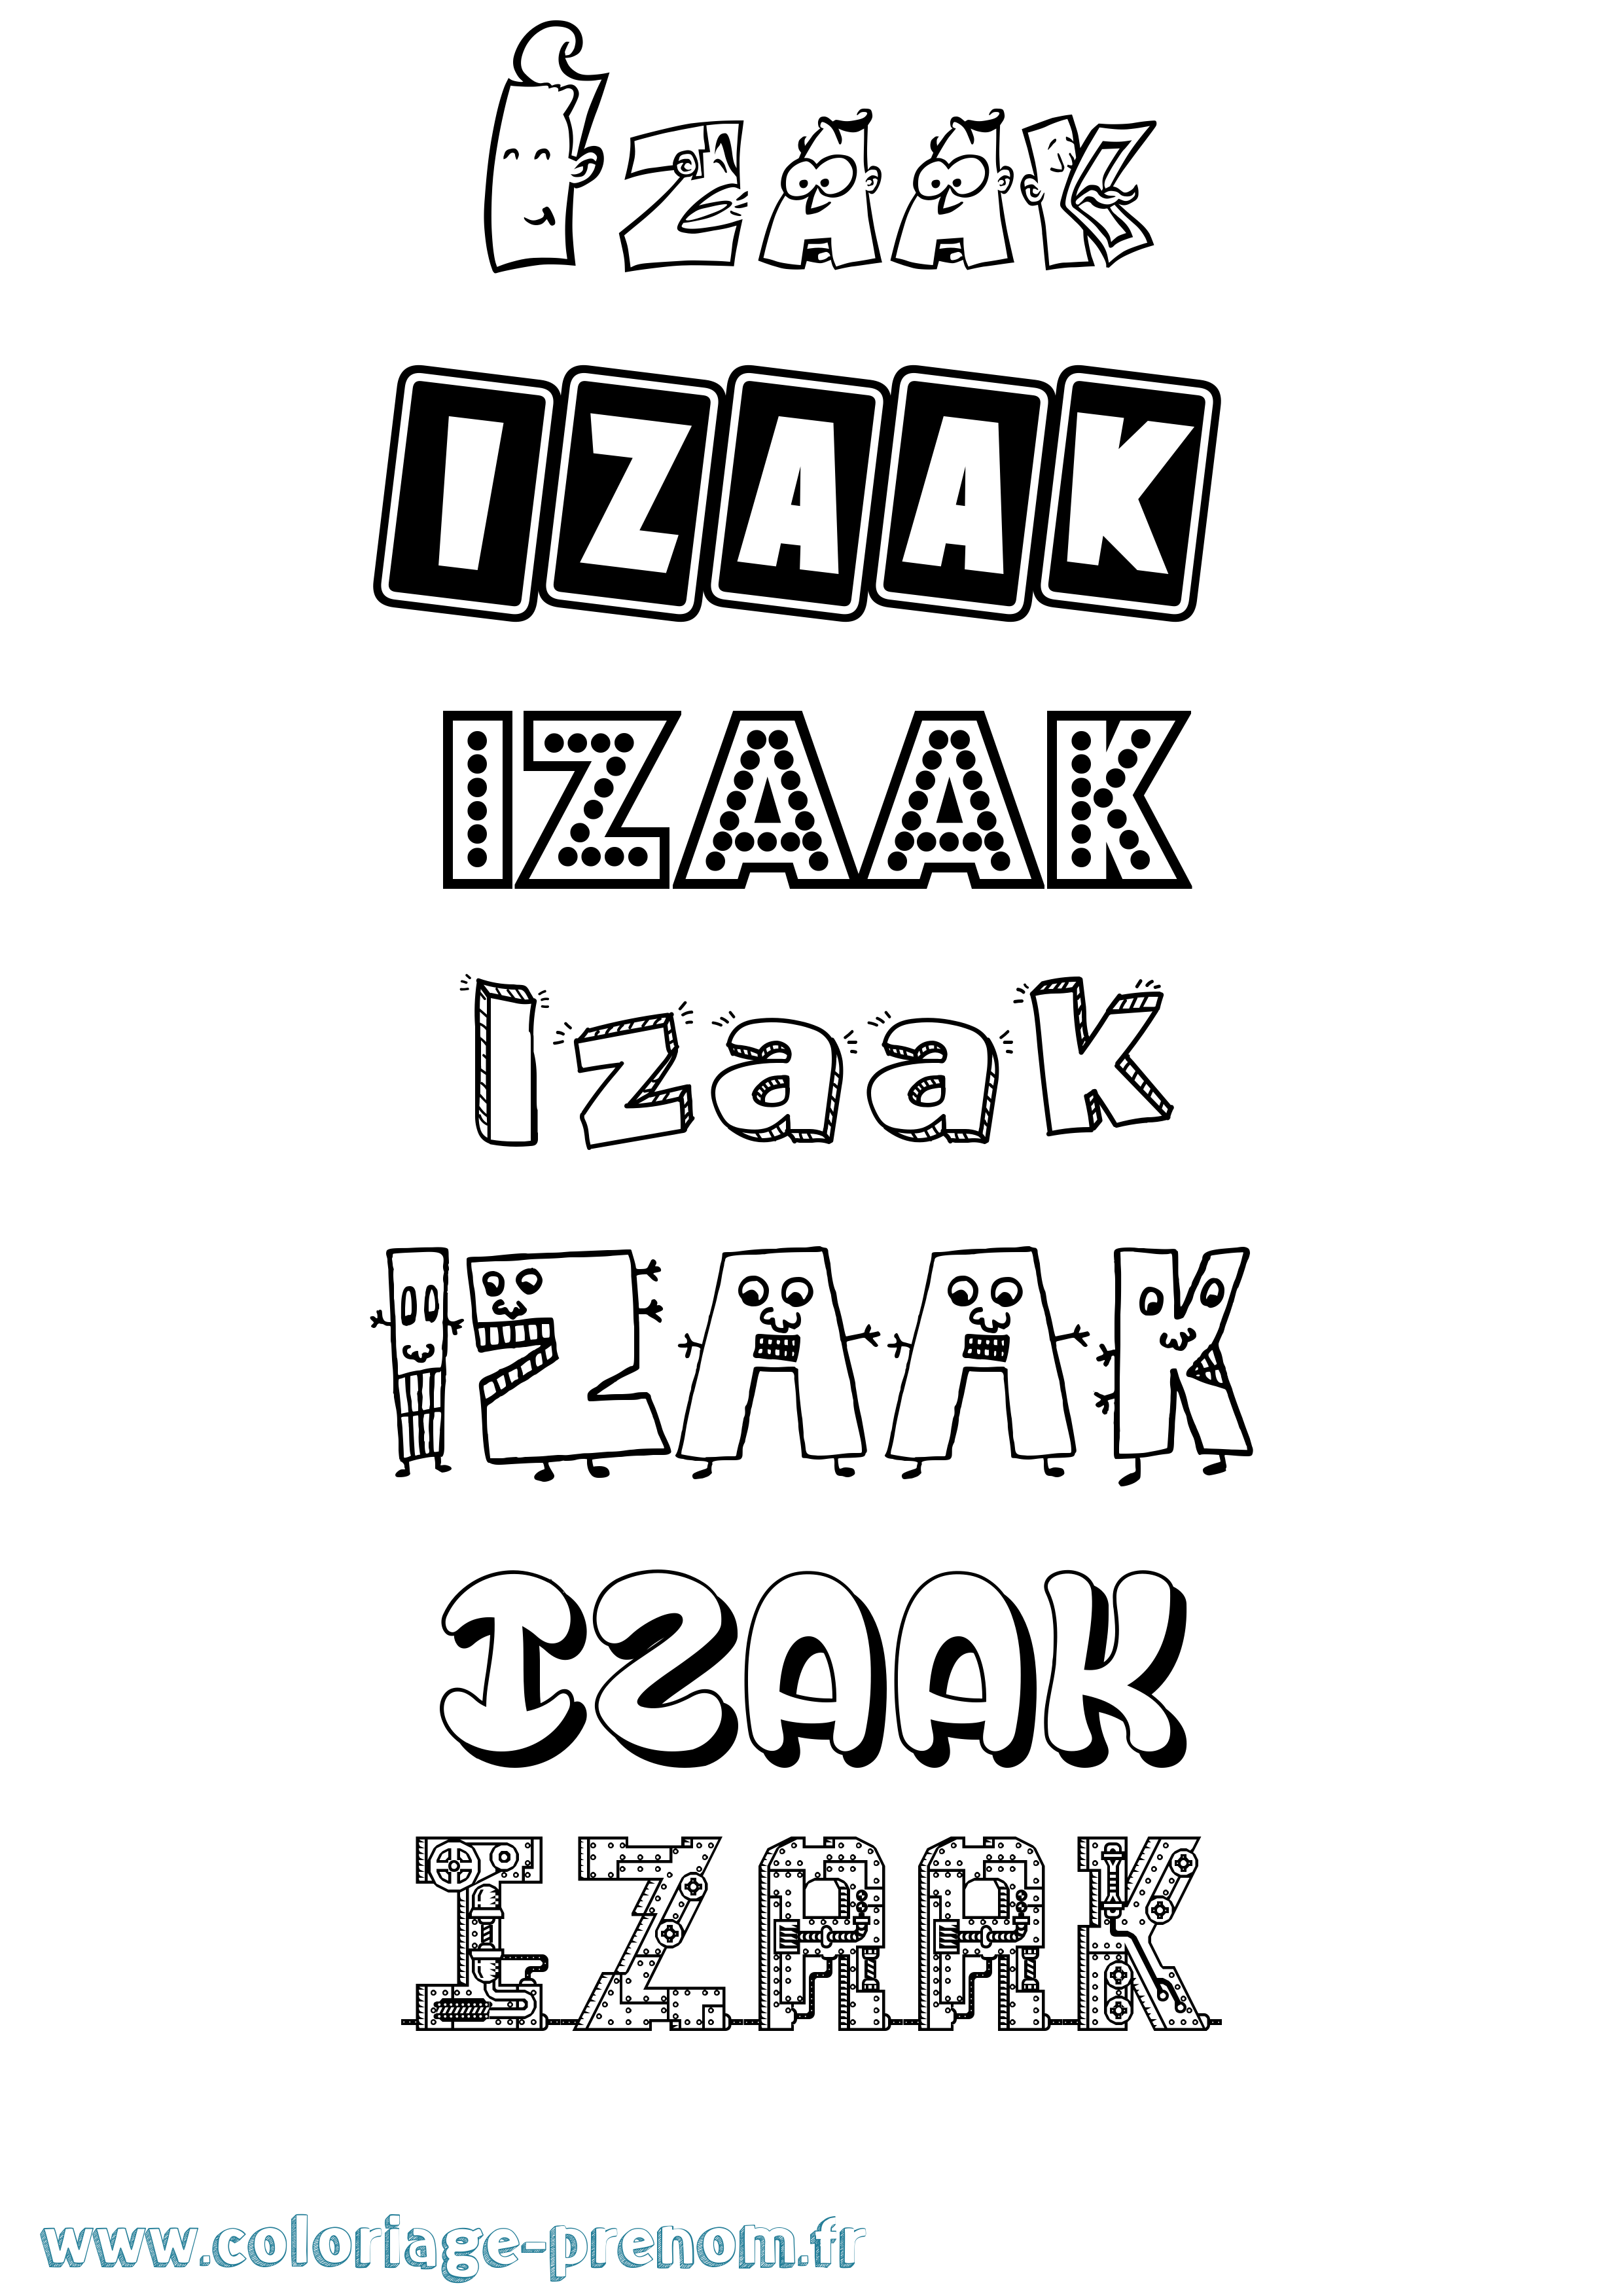 Coloriage prénom Izaak Fun